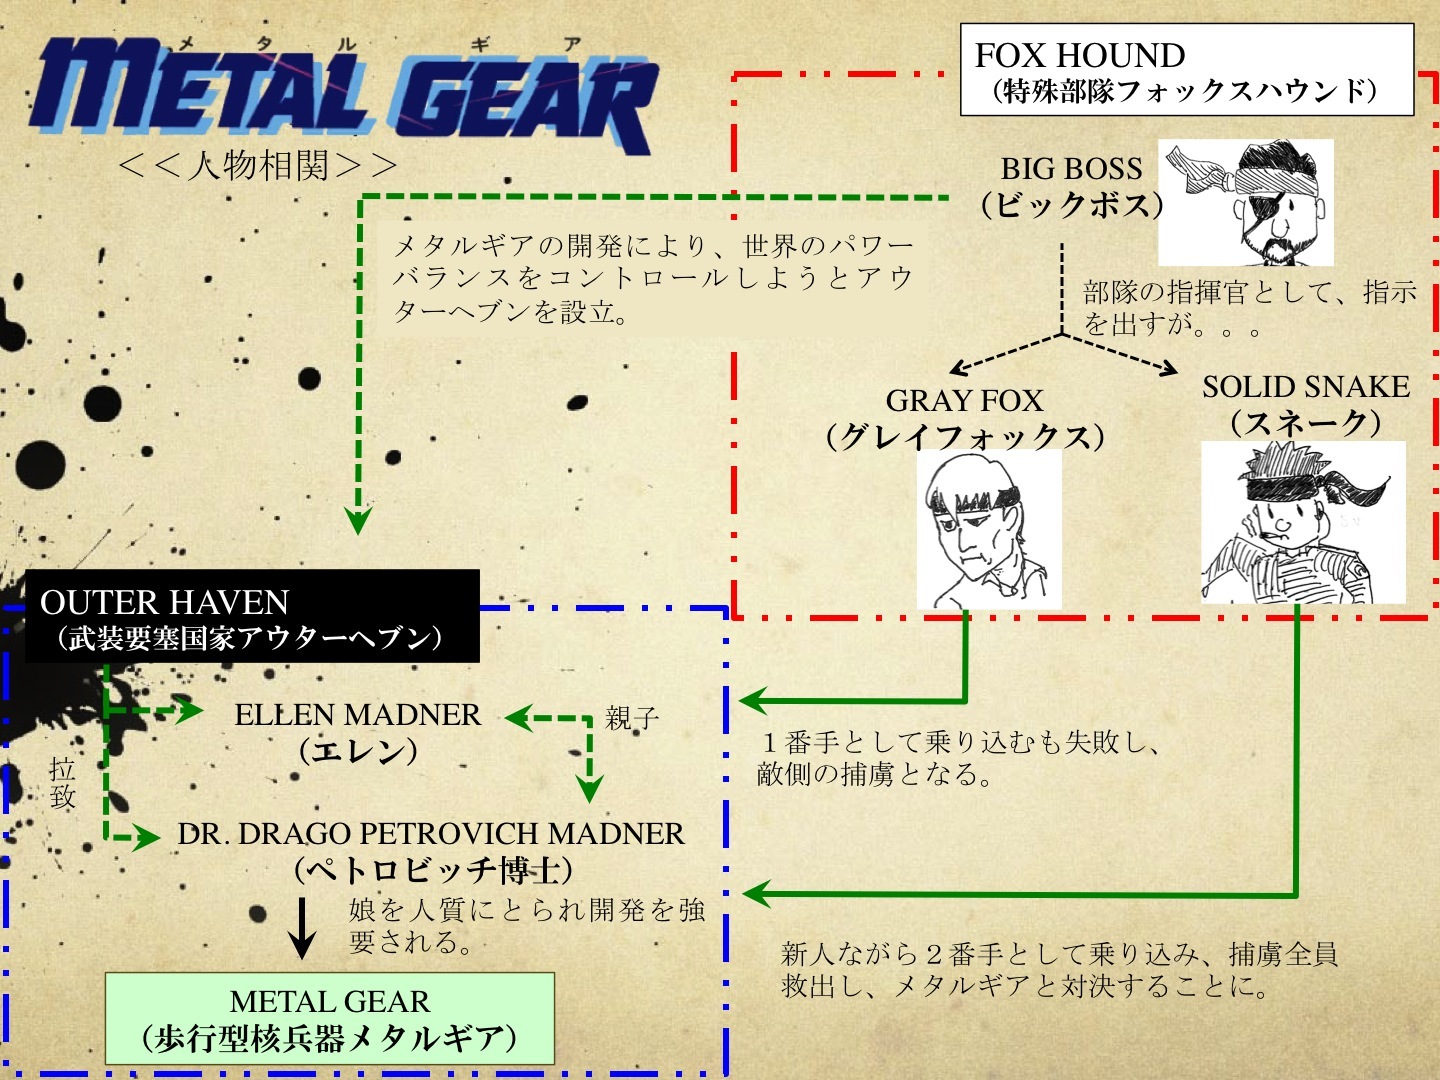 たかとら君の なんでもクリティック Part 2 シリーズ解説編 Metal Gear Solid あの大人気スパイゲームのノベライズ